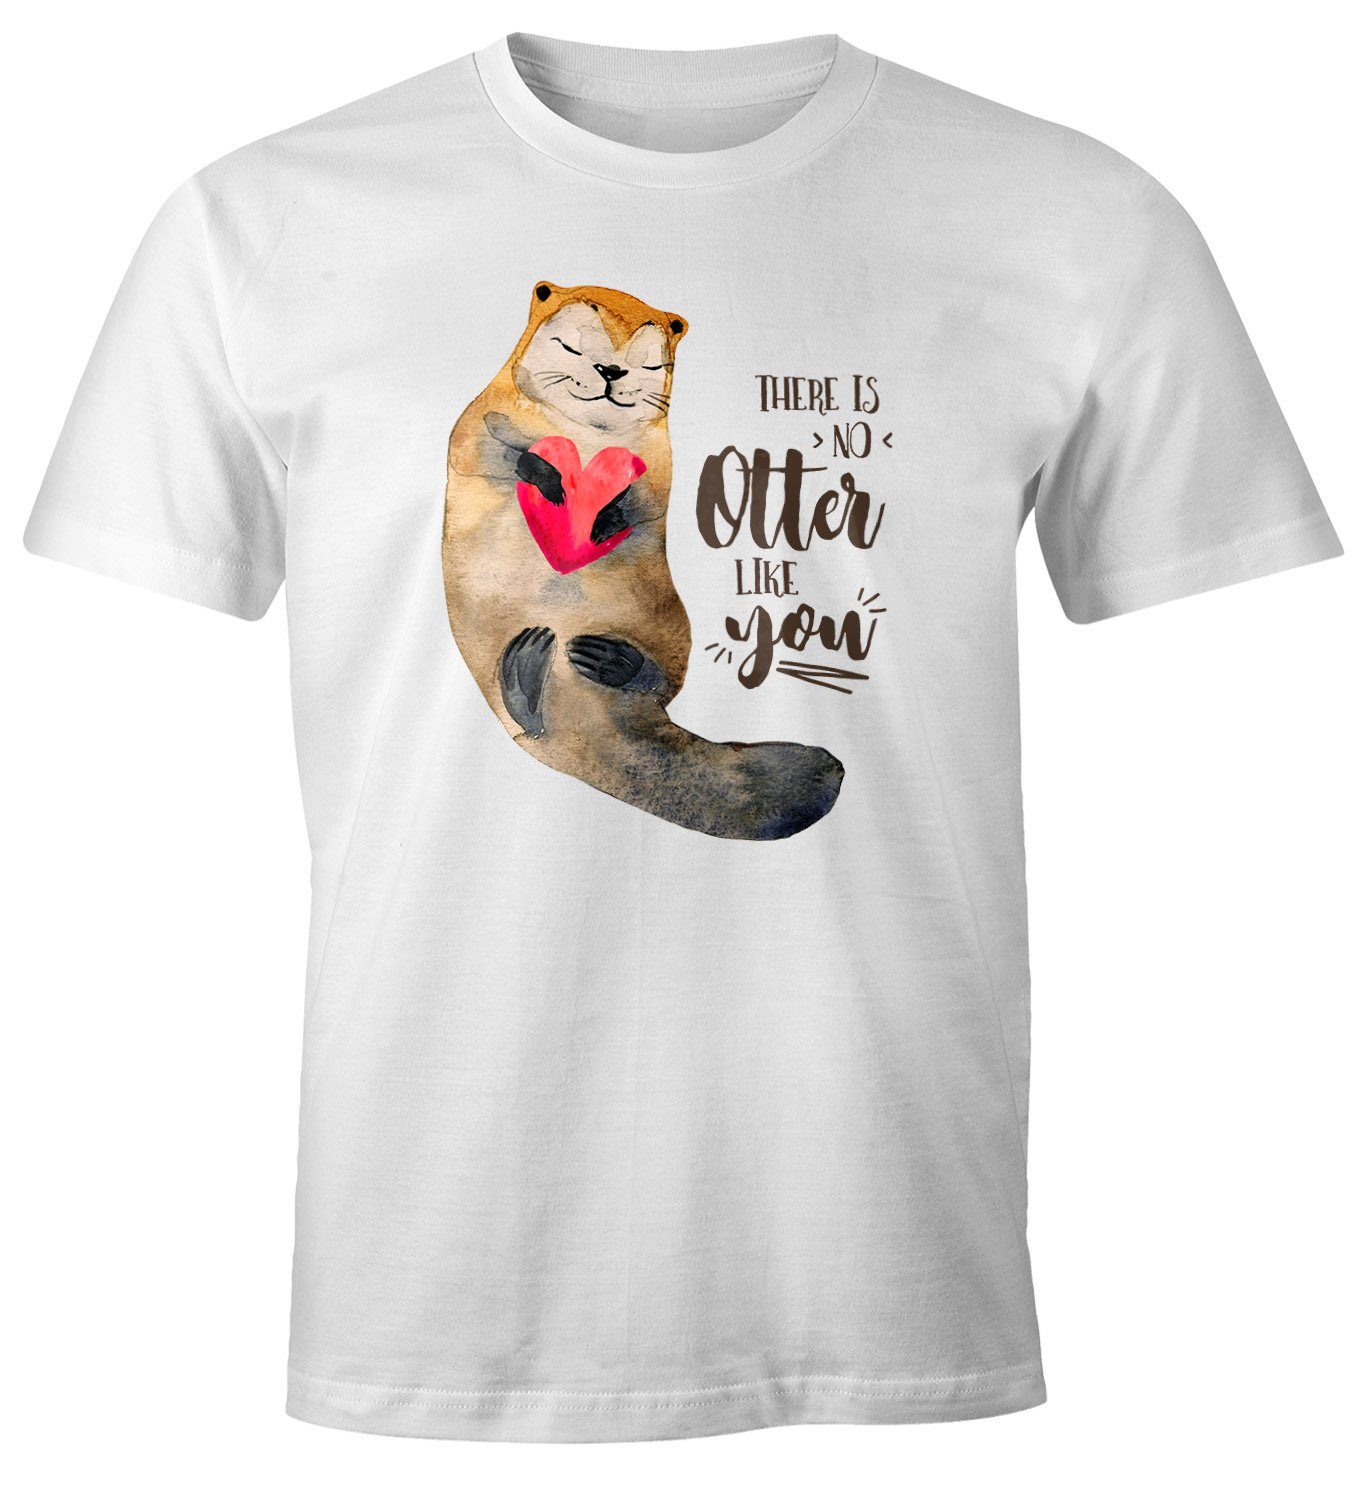 MoonWorks Print-Shirt Herren T-Shirt Geschenk Liebe There is no otter like you Spruch Love Quote lustig verliebt Freund Freundin Fun-Shirt Moonworks® mit Print